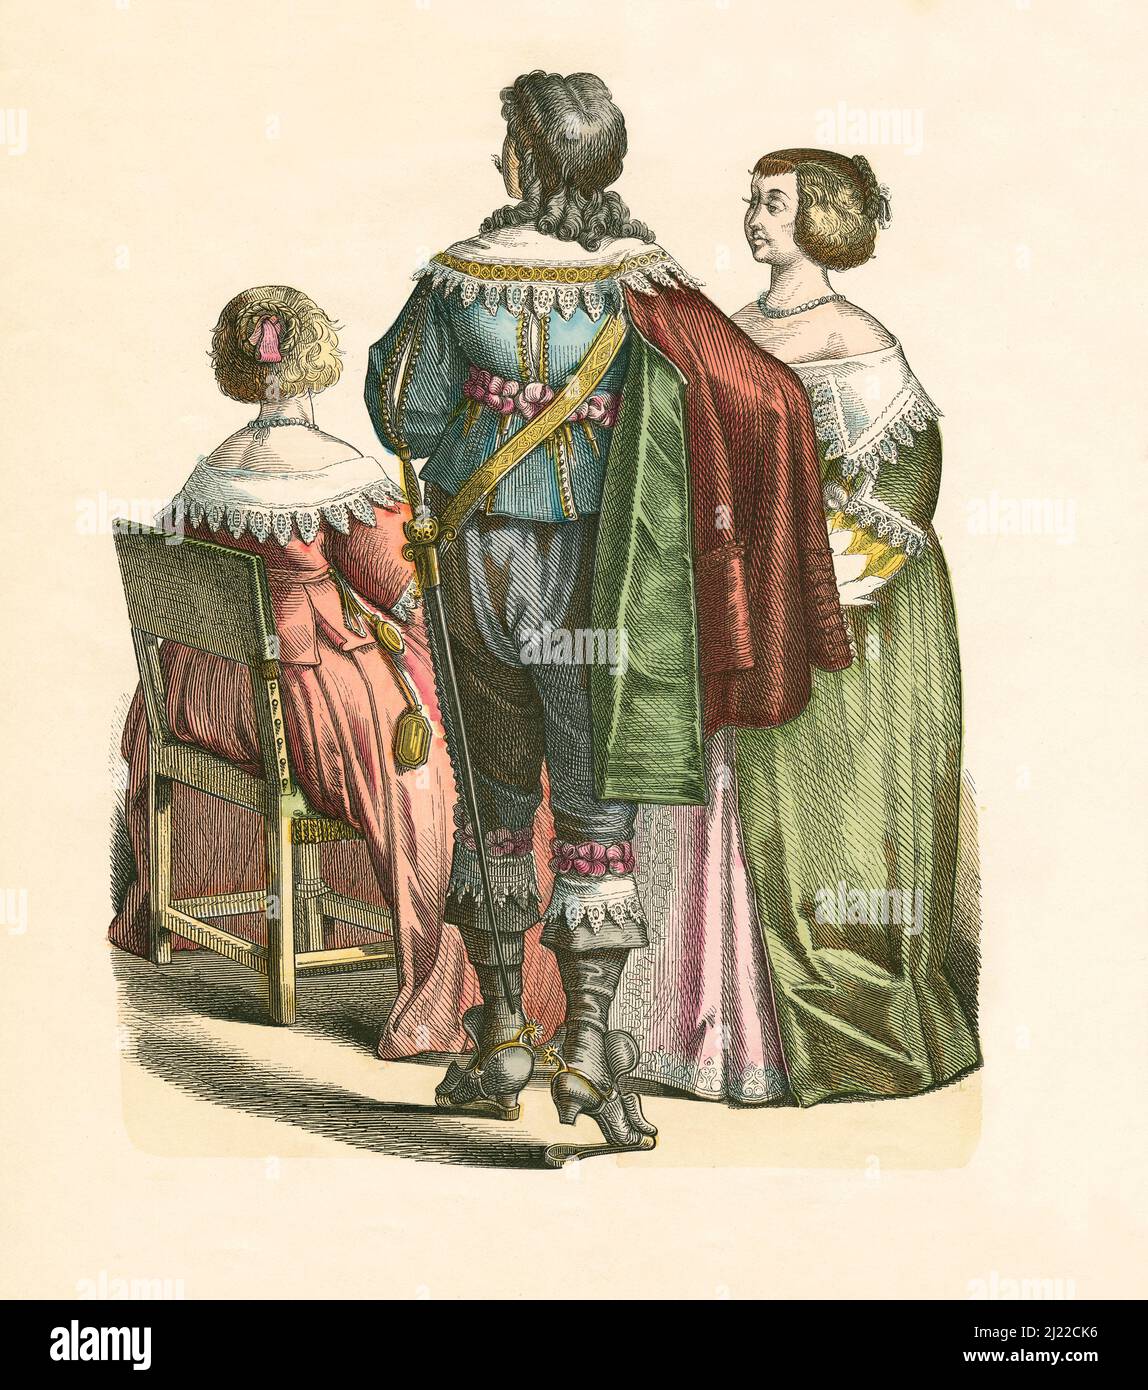 Nobiltà francese, secondo terzo del 17th secolo, Illustrazione, la Storia del Costume, Braun & Schneider, Monaco, Germania, 1861-1880 Foto Stock